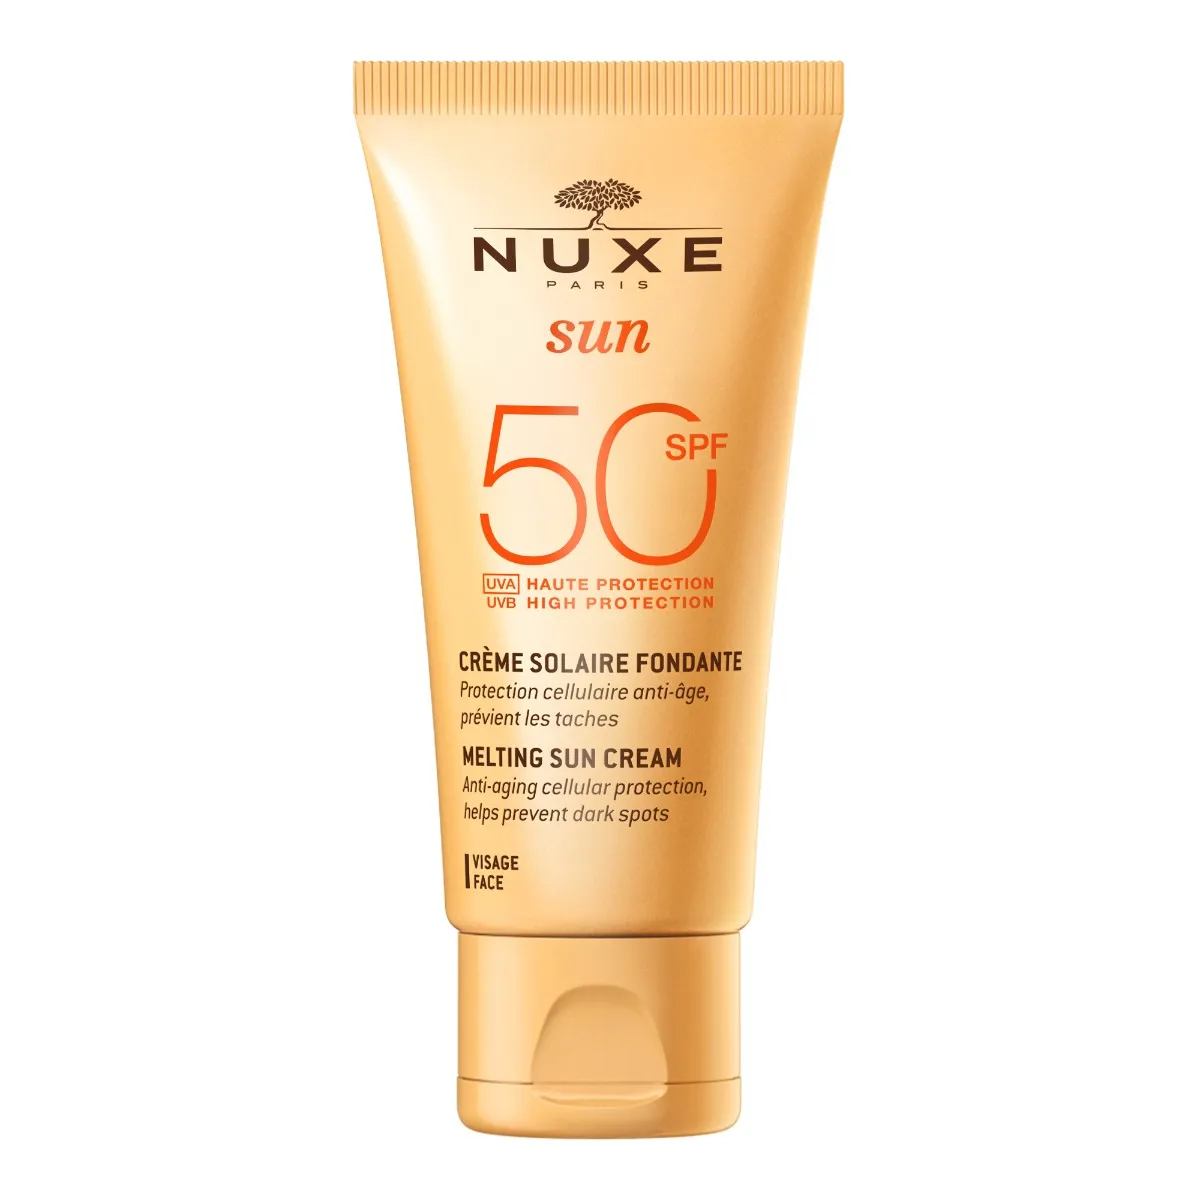 Crème Solaire Fondante SPF50 de Nuxe SUN - Protection et hydratation-3264680006999